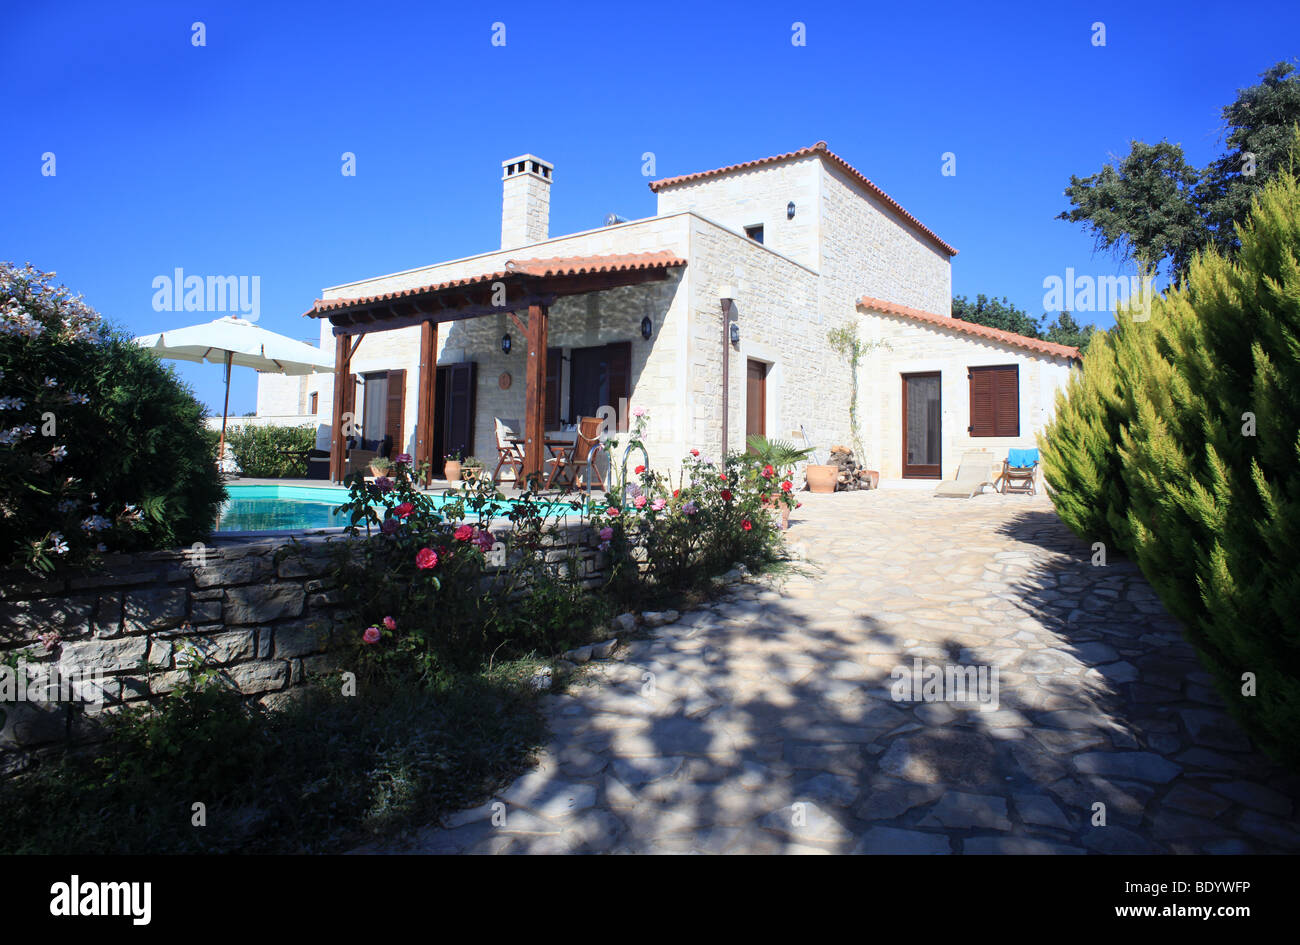 Eine griechische Ferienhaus oder Ferienwohnung Villa auf der mediterranen Insel Kreta Stockfoto